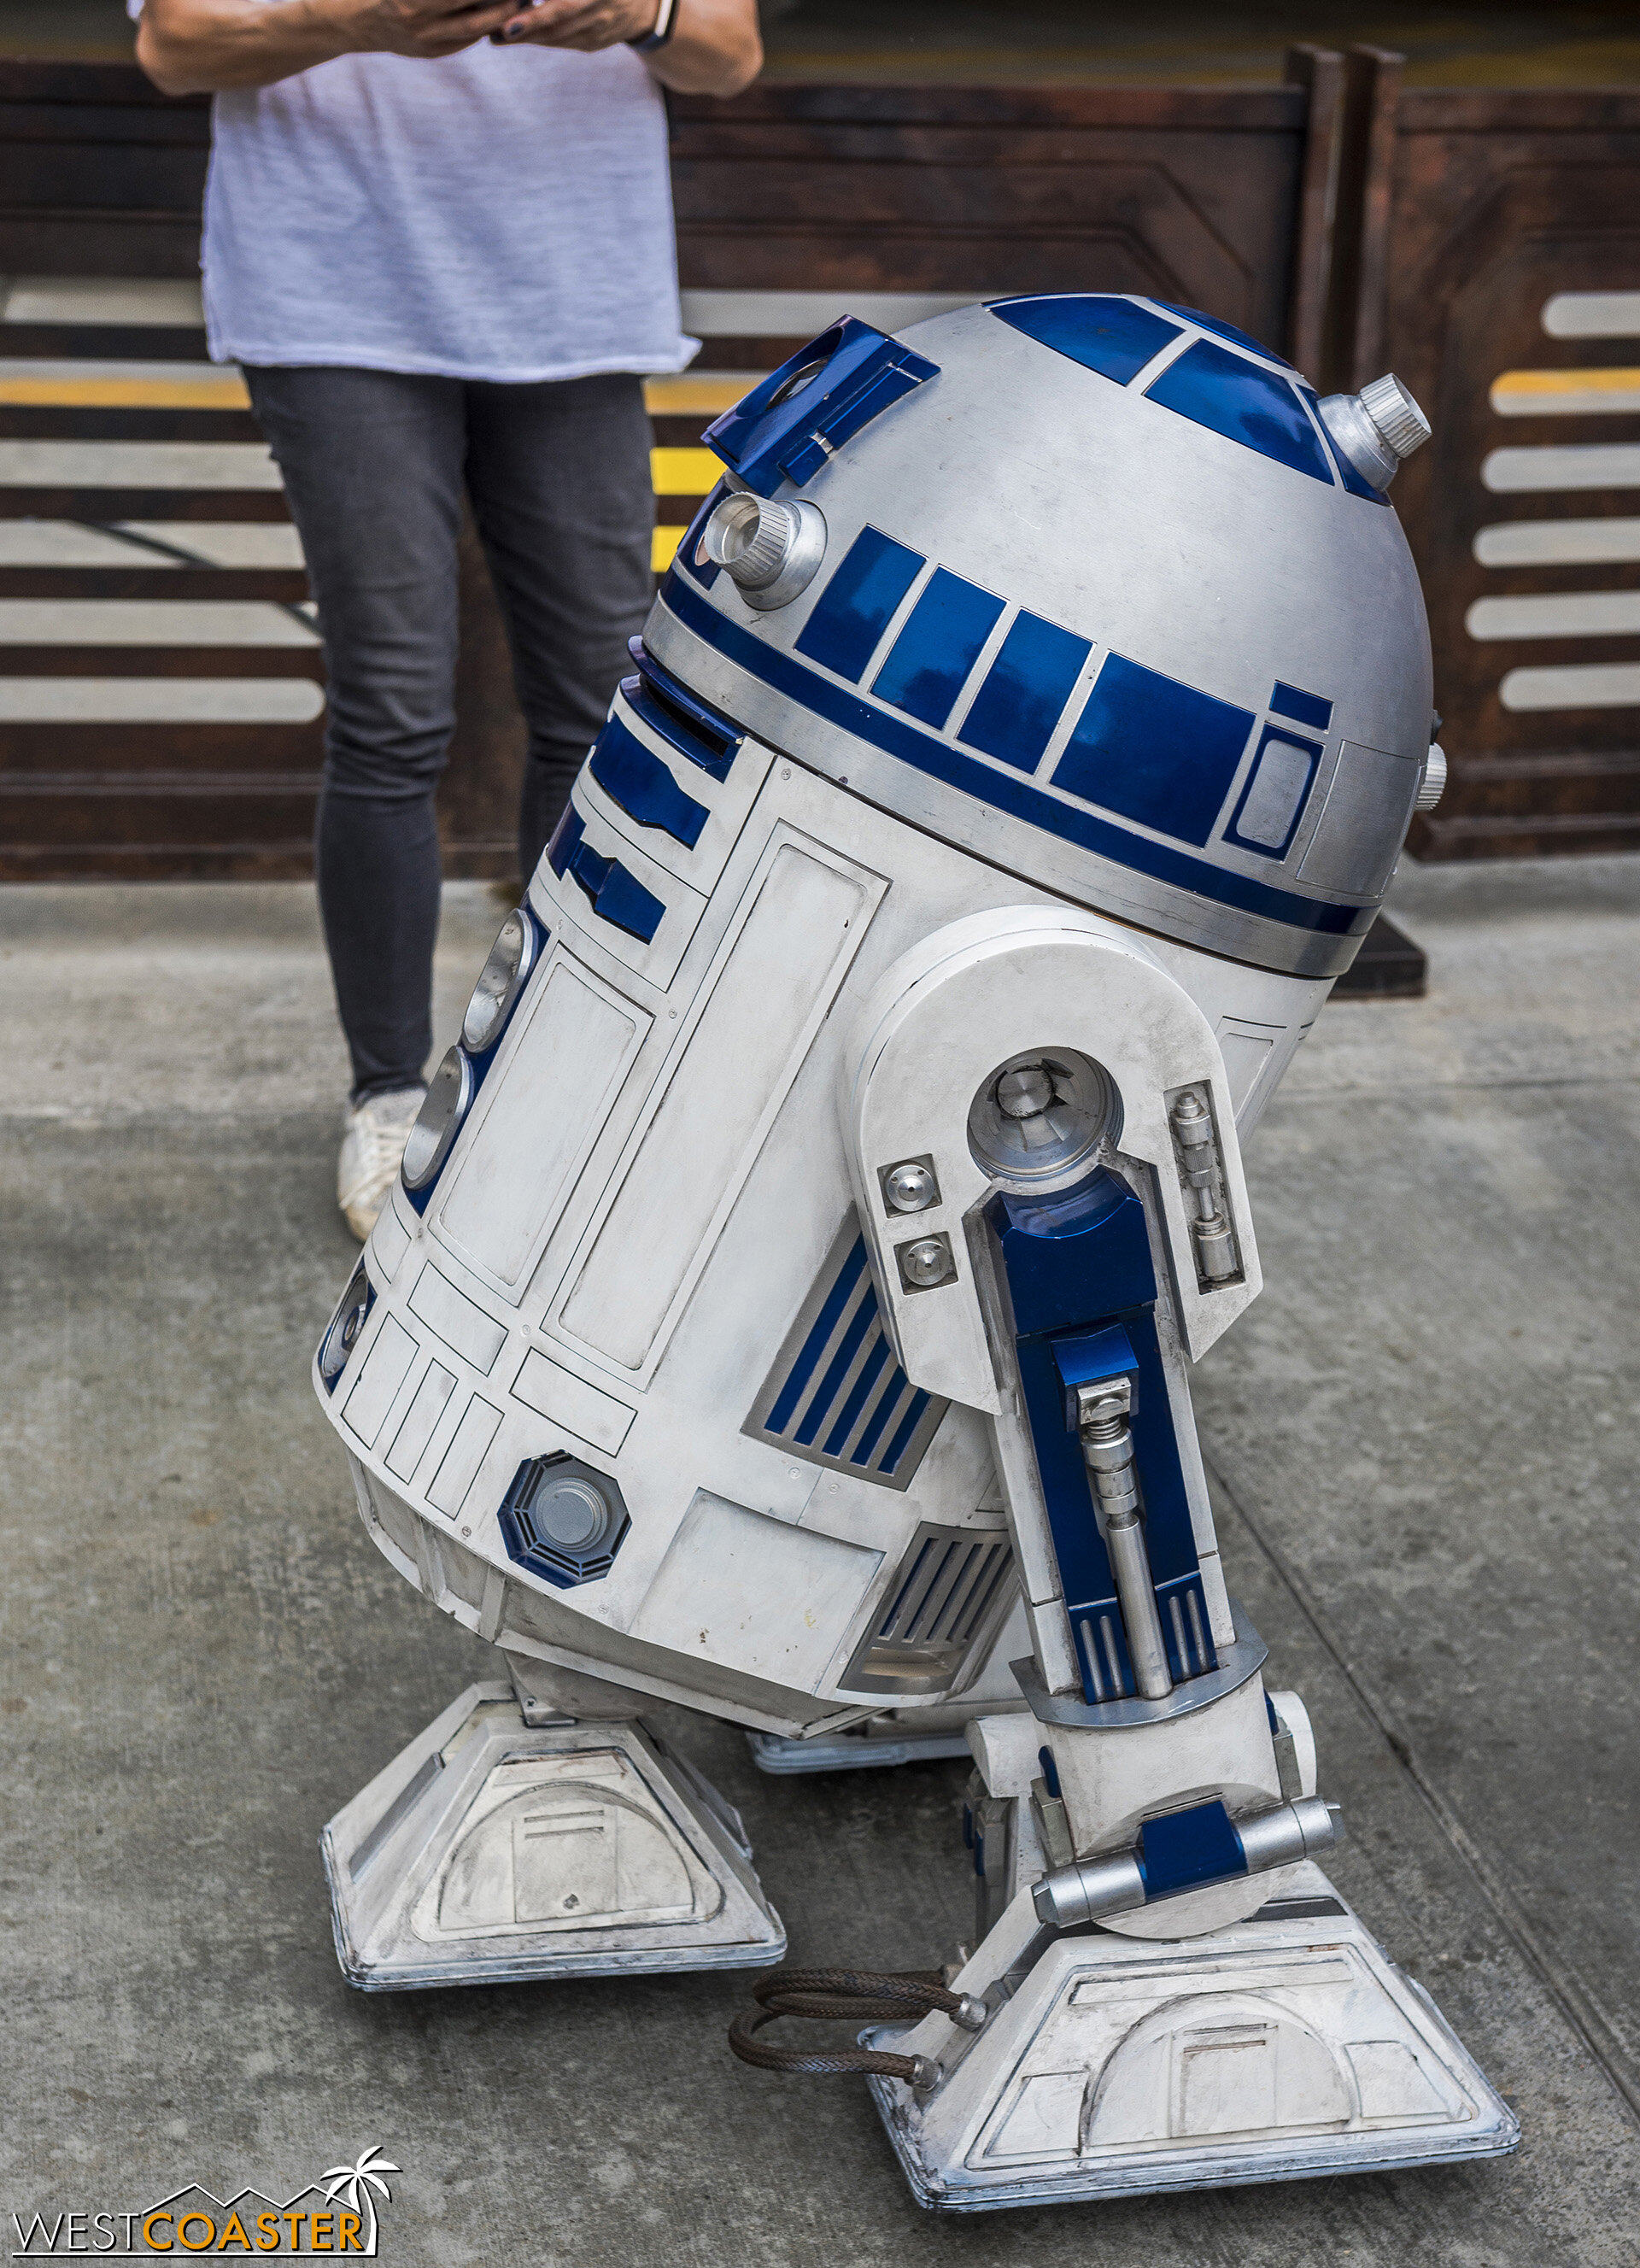  R2 looks good! 